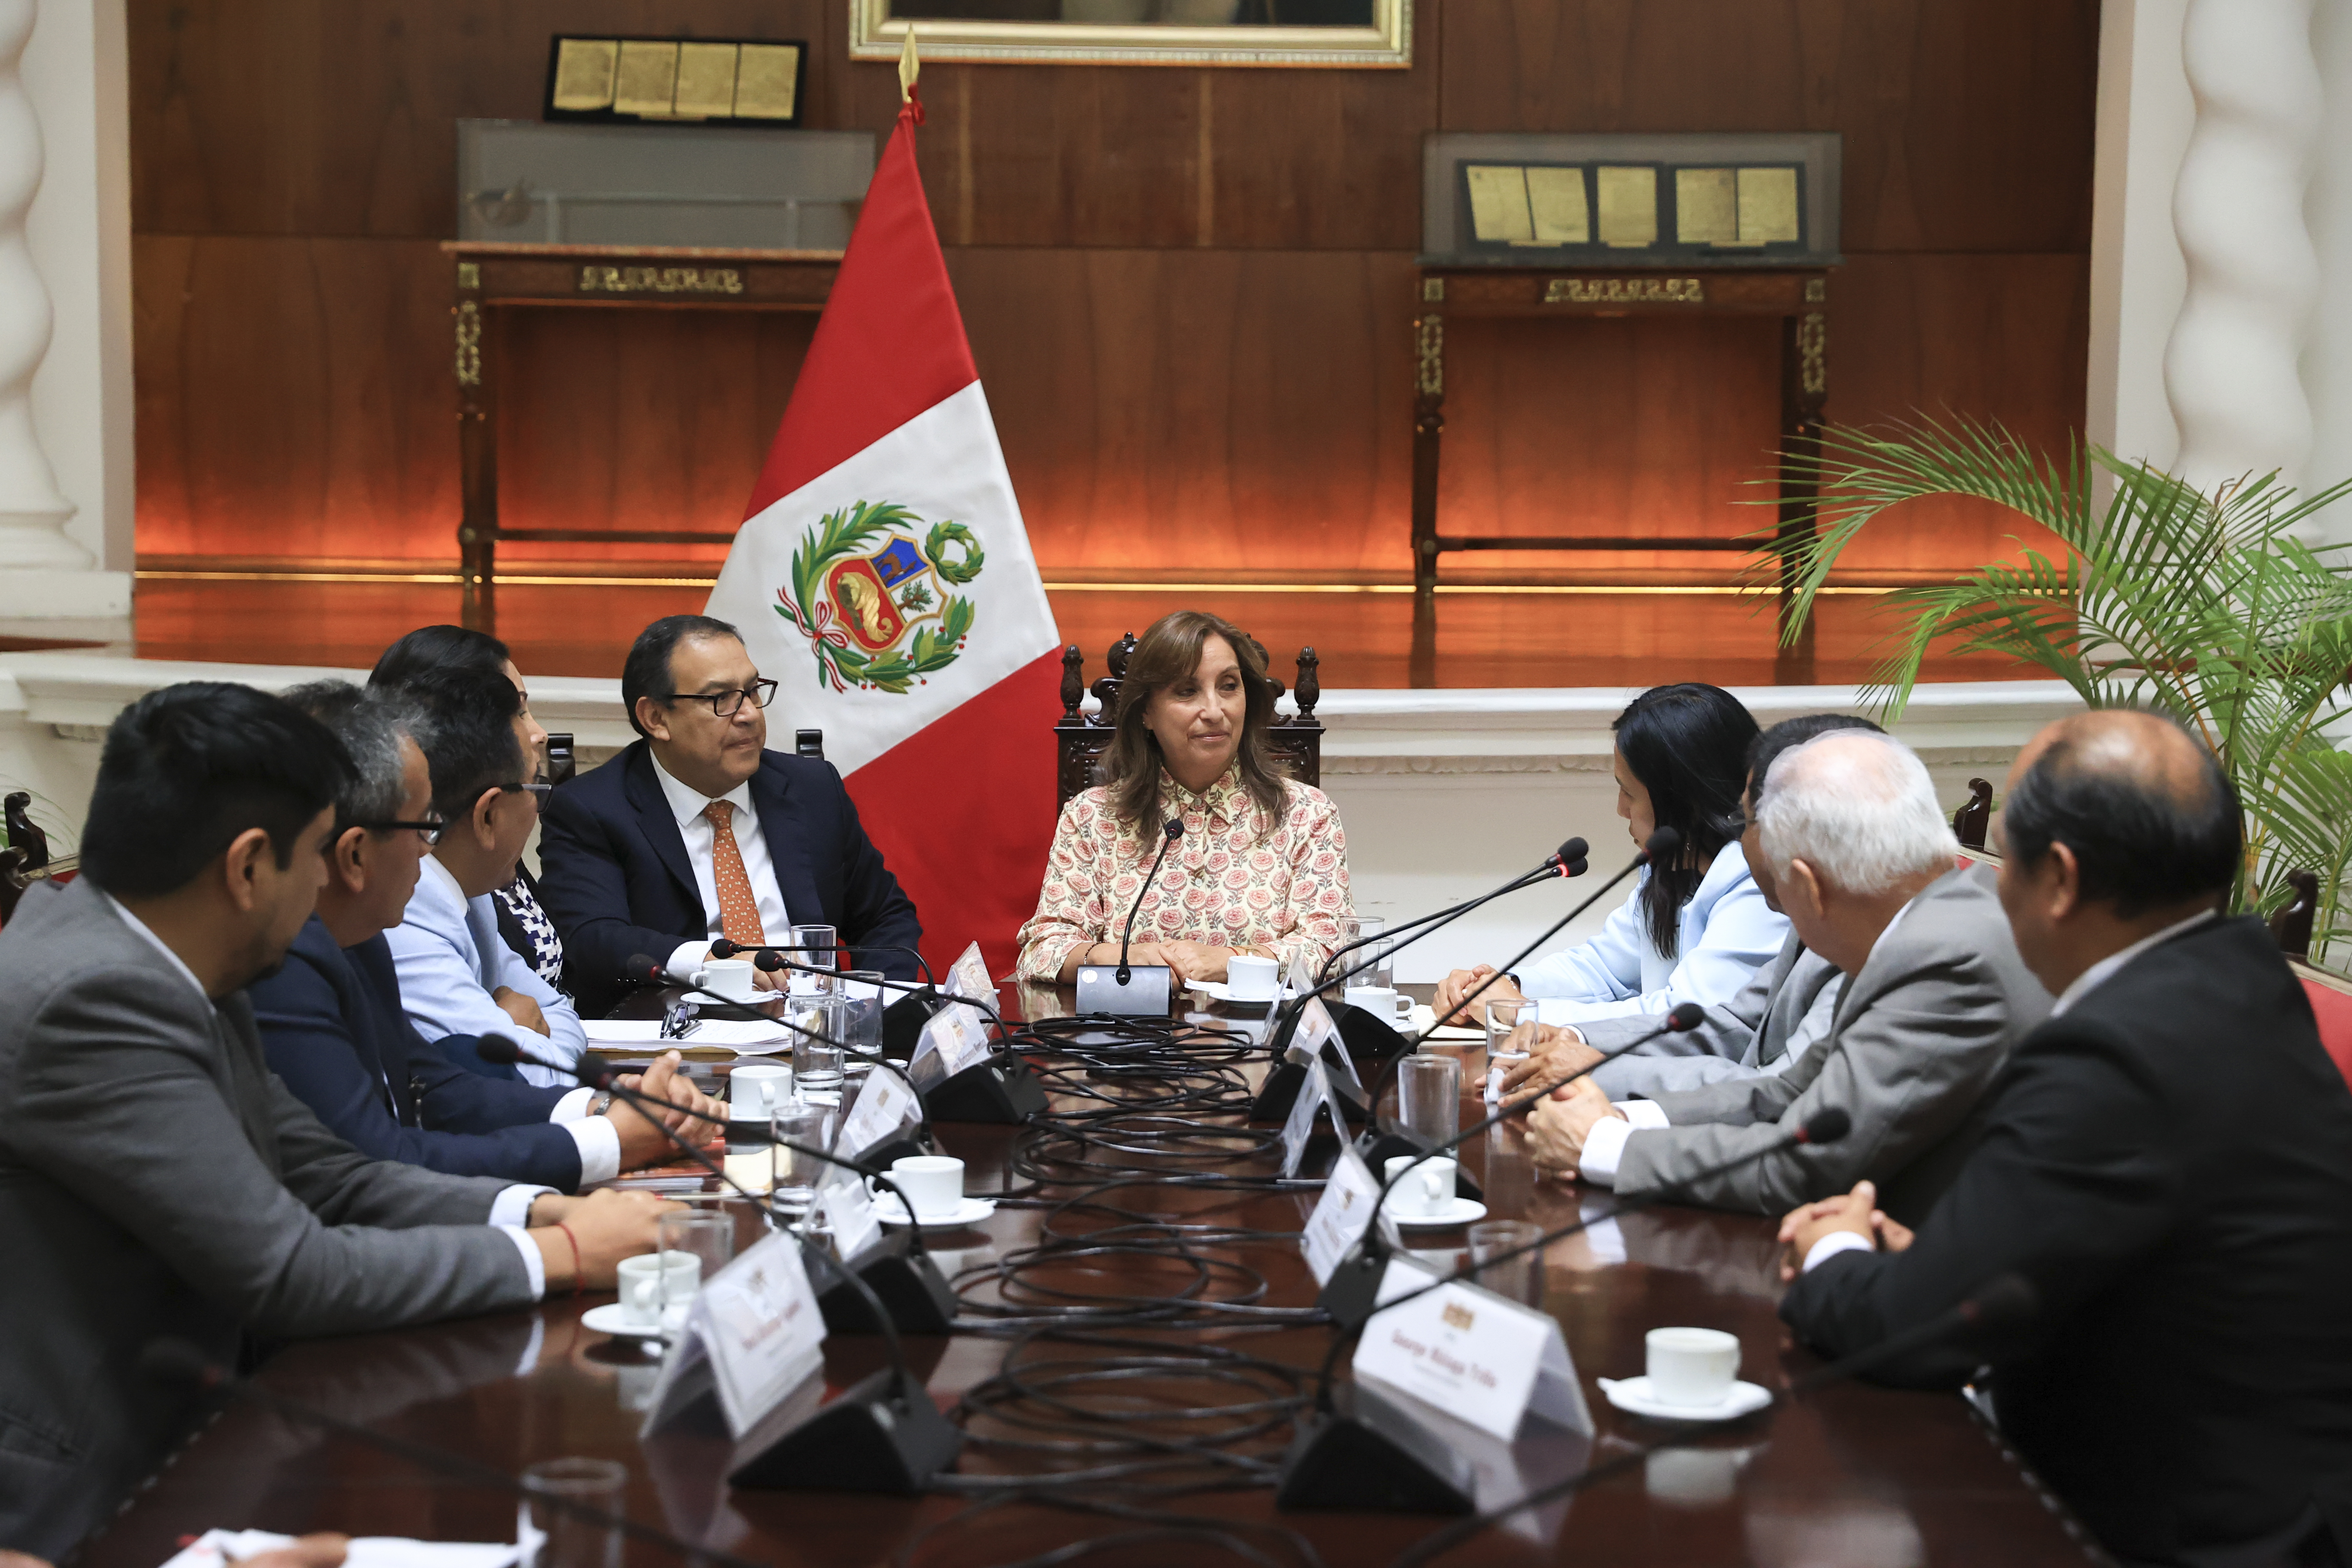 PERÚ: Gobierno garantiza calidad de la educación en todos los niveles, asegura presidenta Boluarte